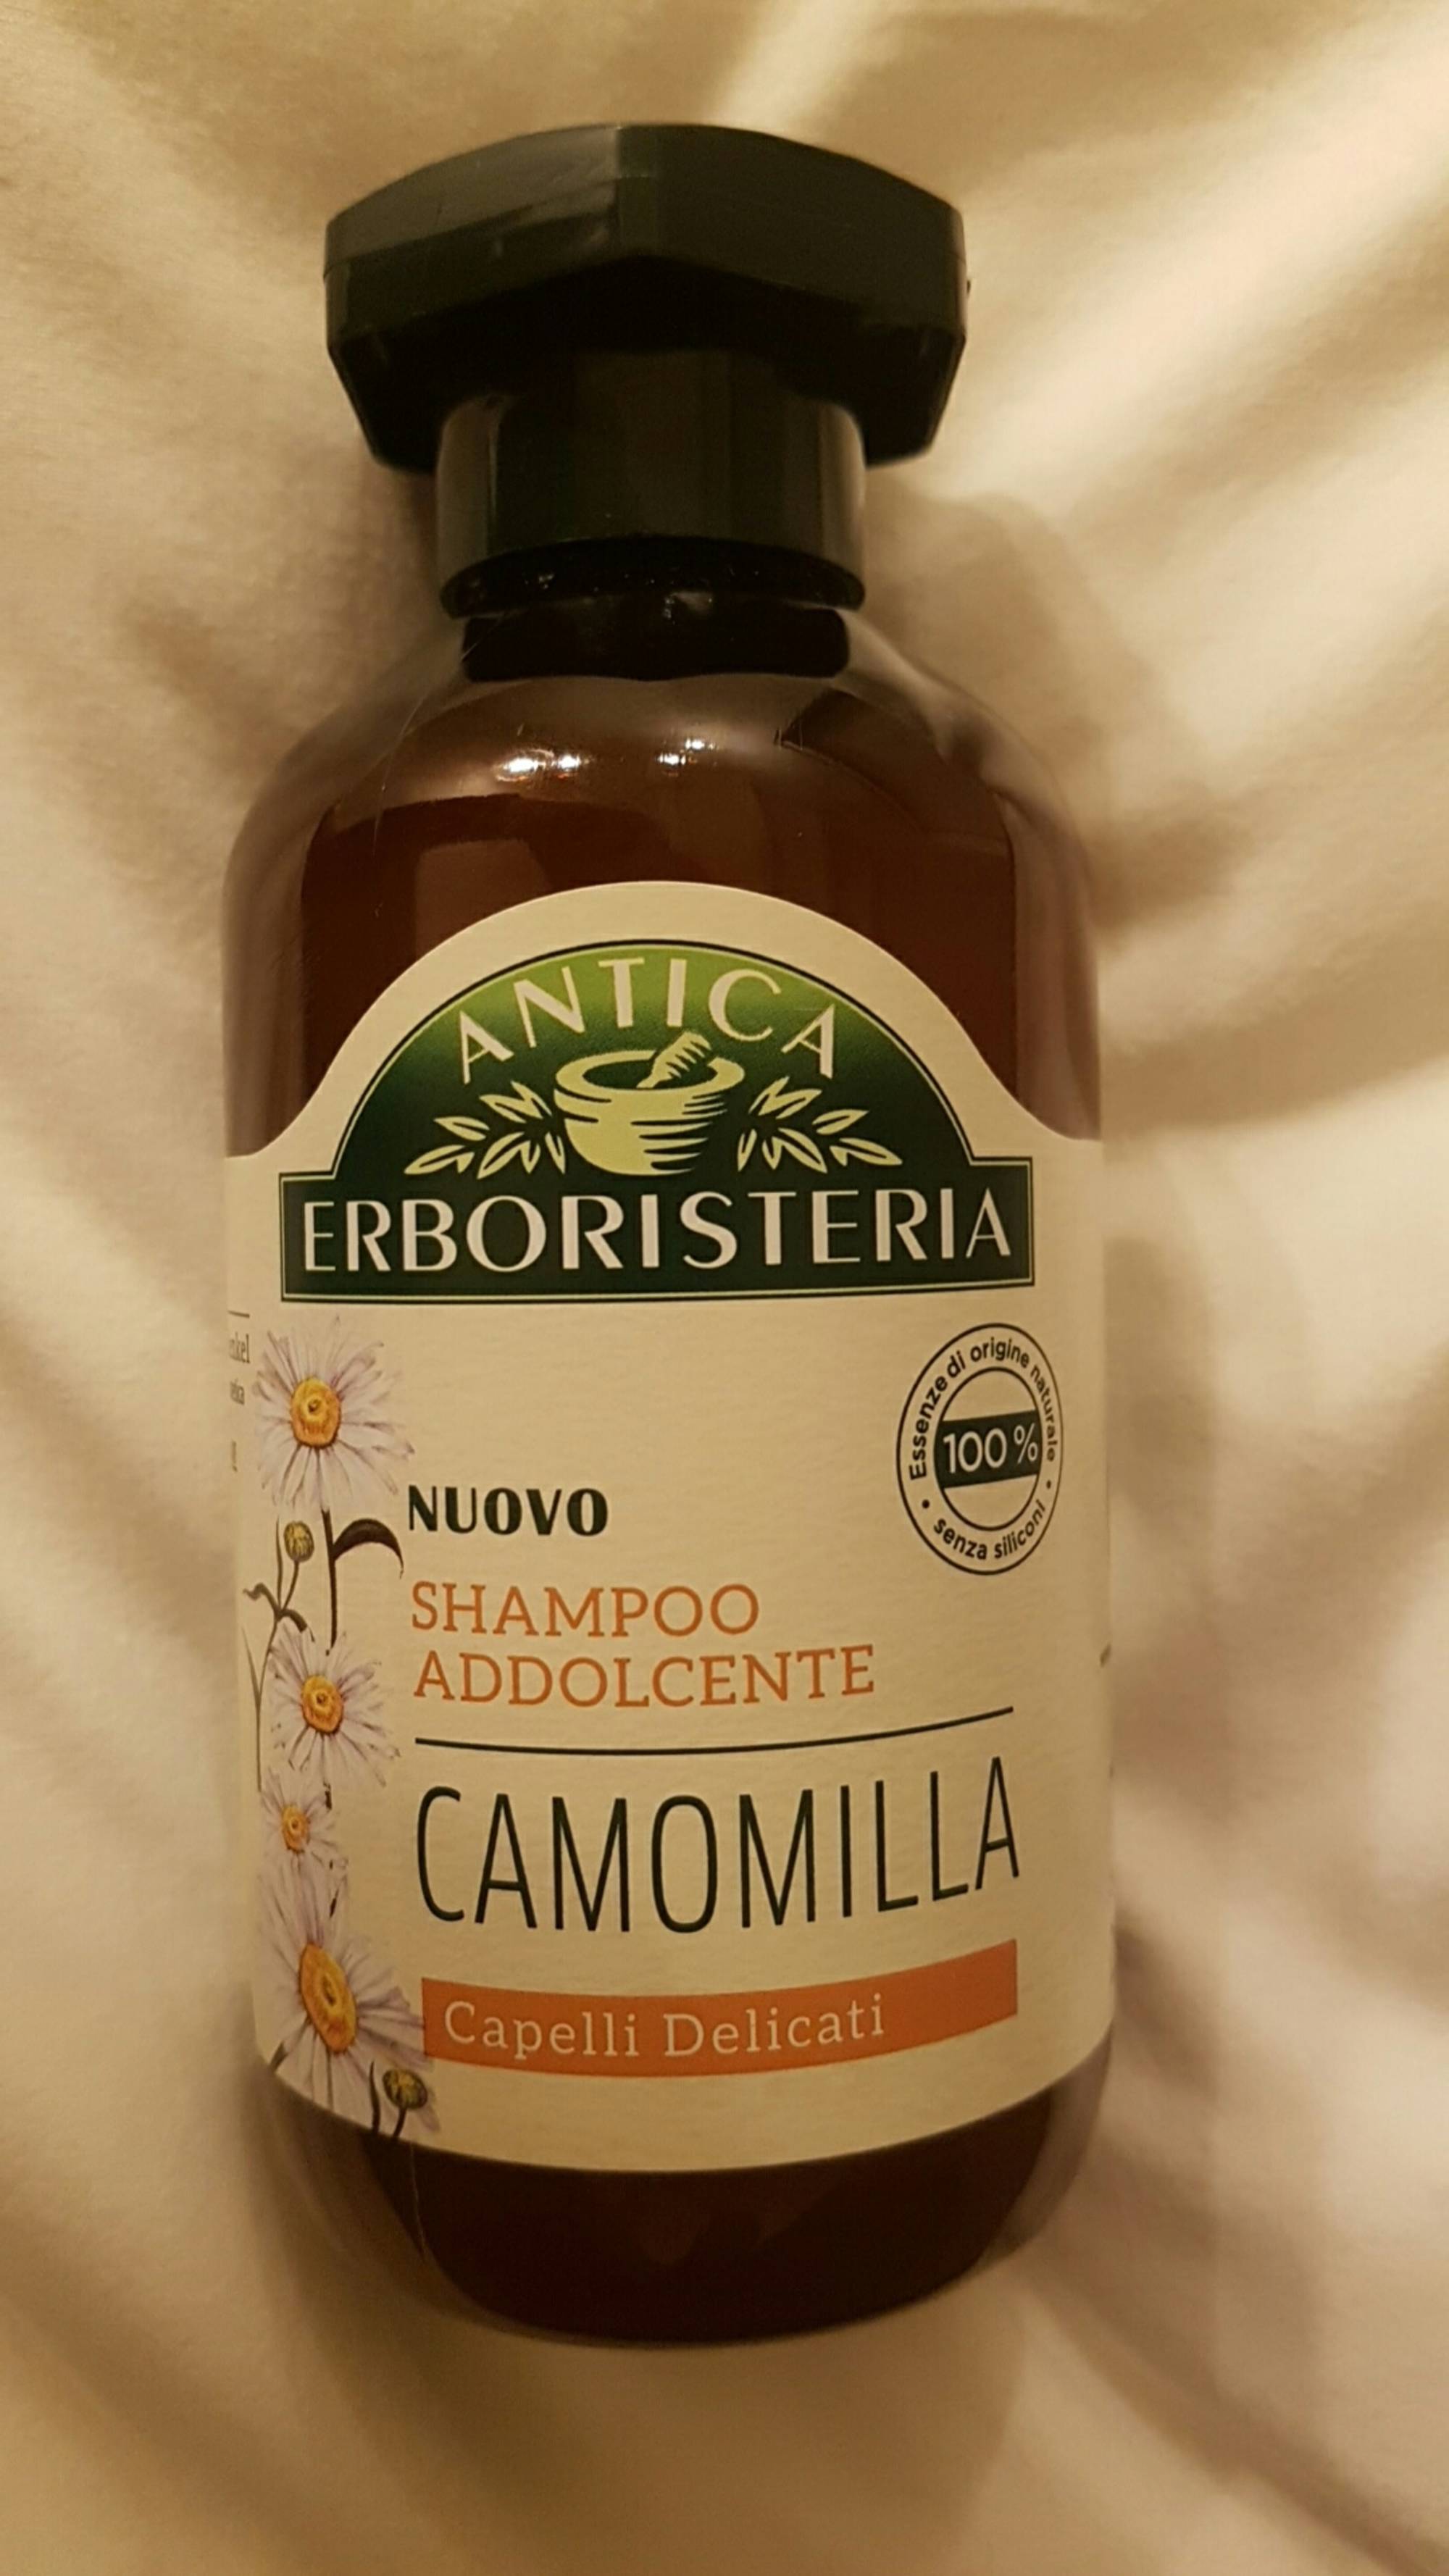 ANTICA ERBORISTERIA - Camomilla - Shampoo addolcente